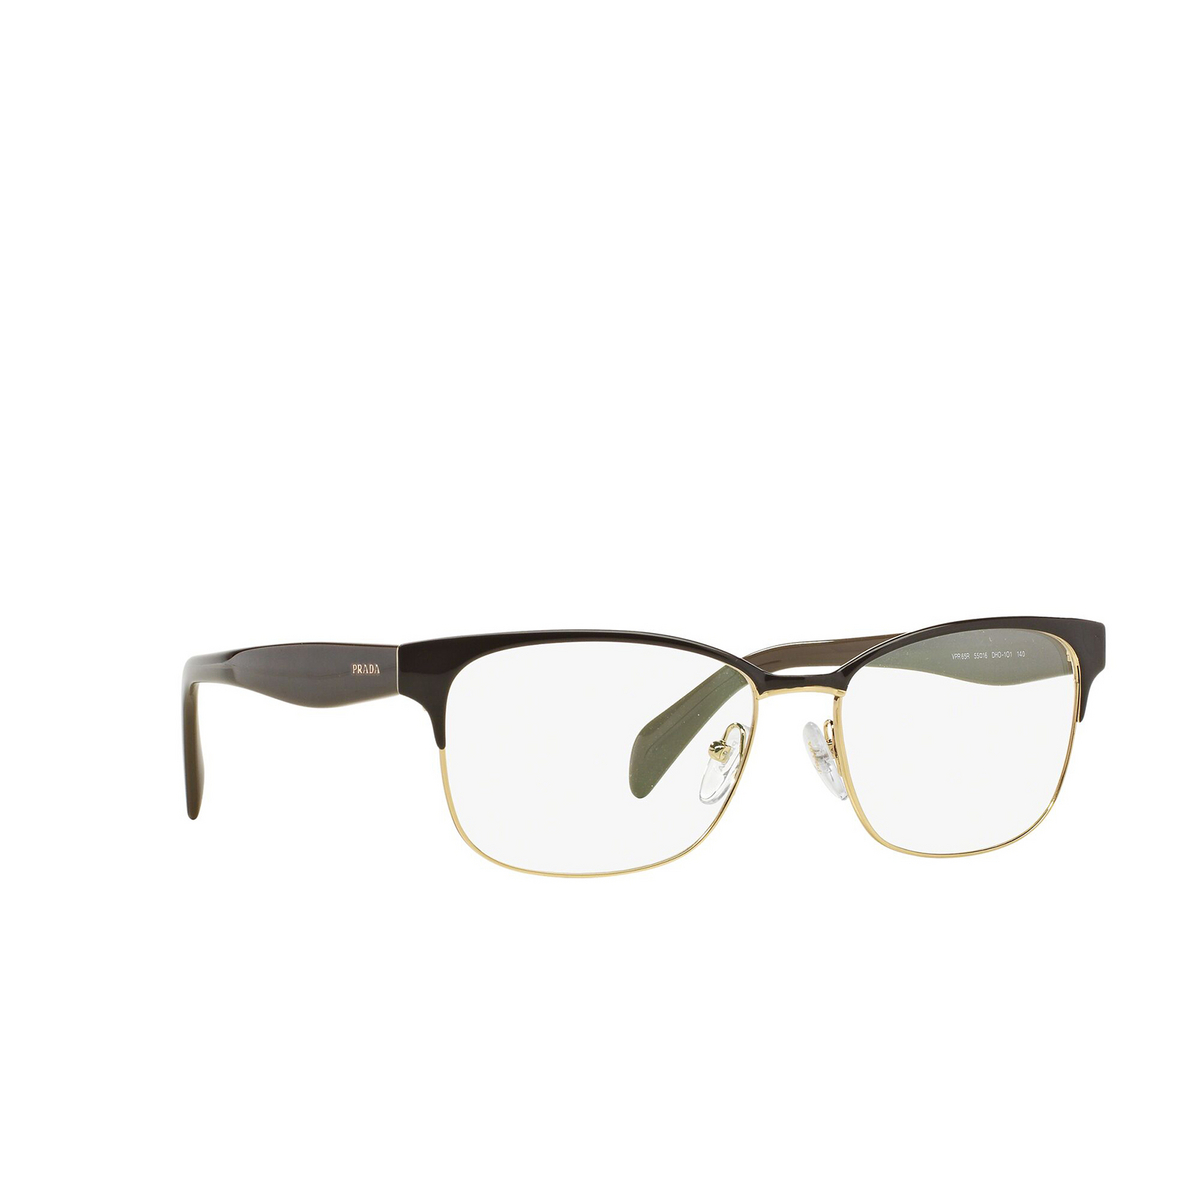 Prada CONCEPTUAL Eyeglasses DHO1O1 Brown on Pale Gold - three-quarters view